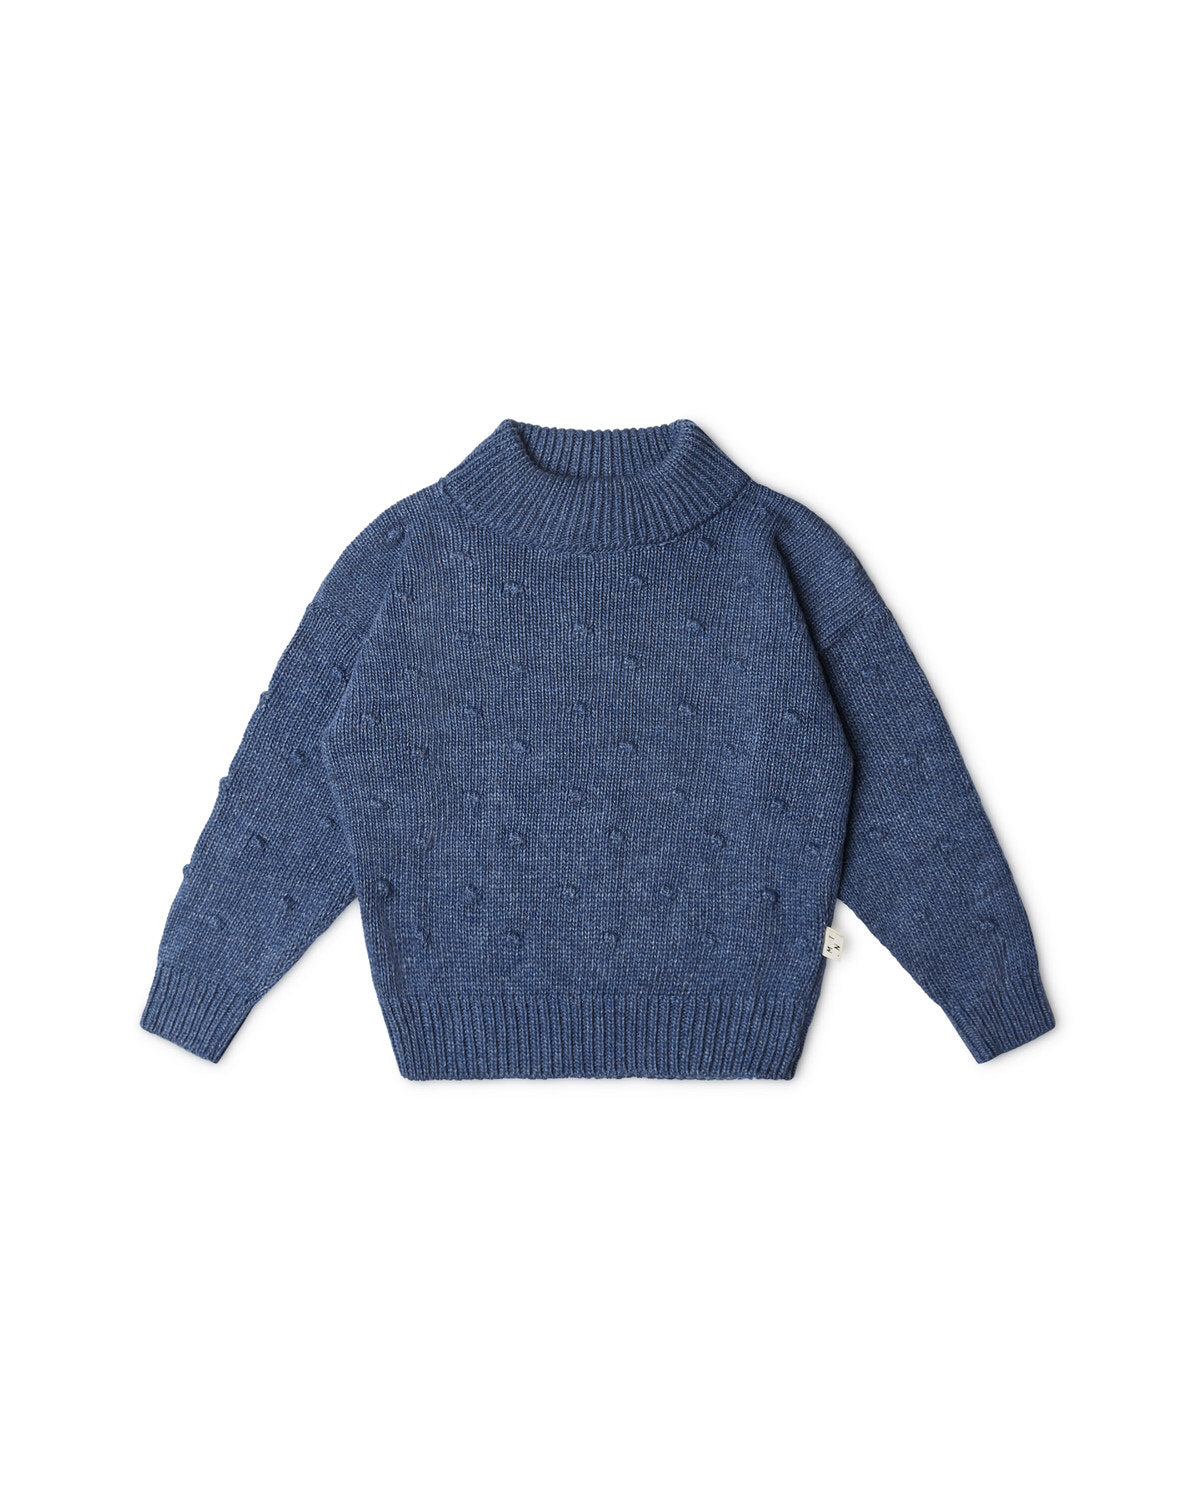 Matona June Sweater Kids - Thunder Blue